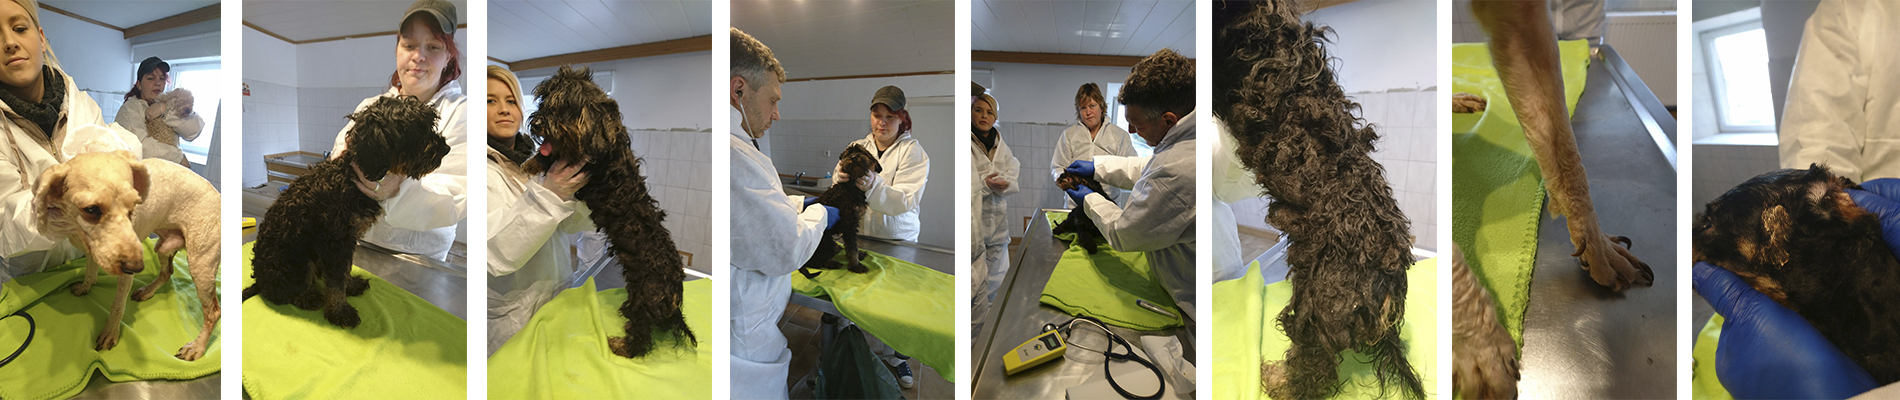 Tierheim Wollaberg - Beschlagnahmte Hunde werden tierärztlich behandelt